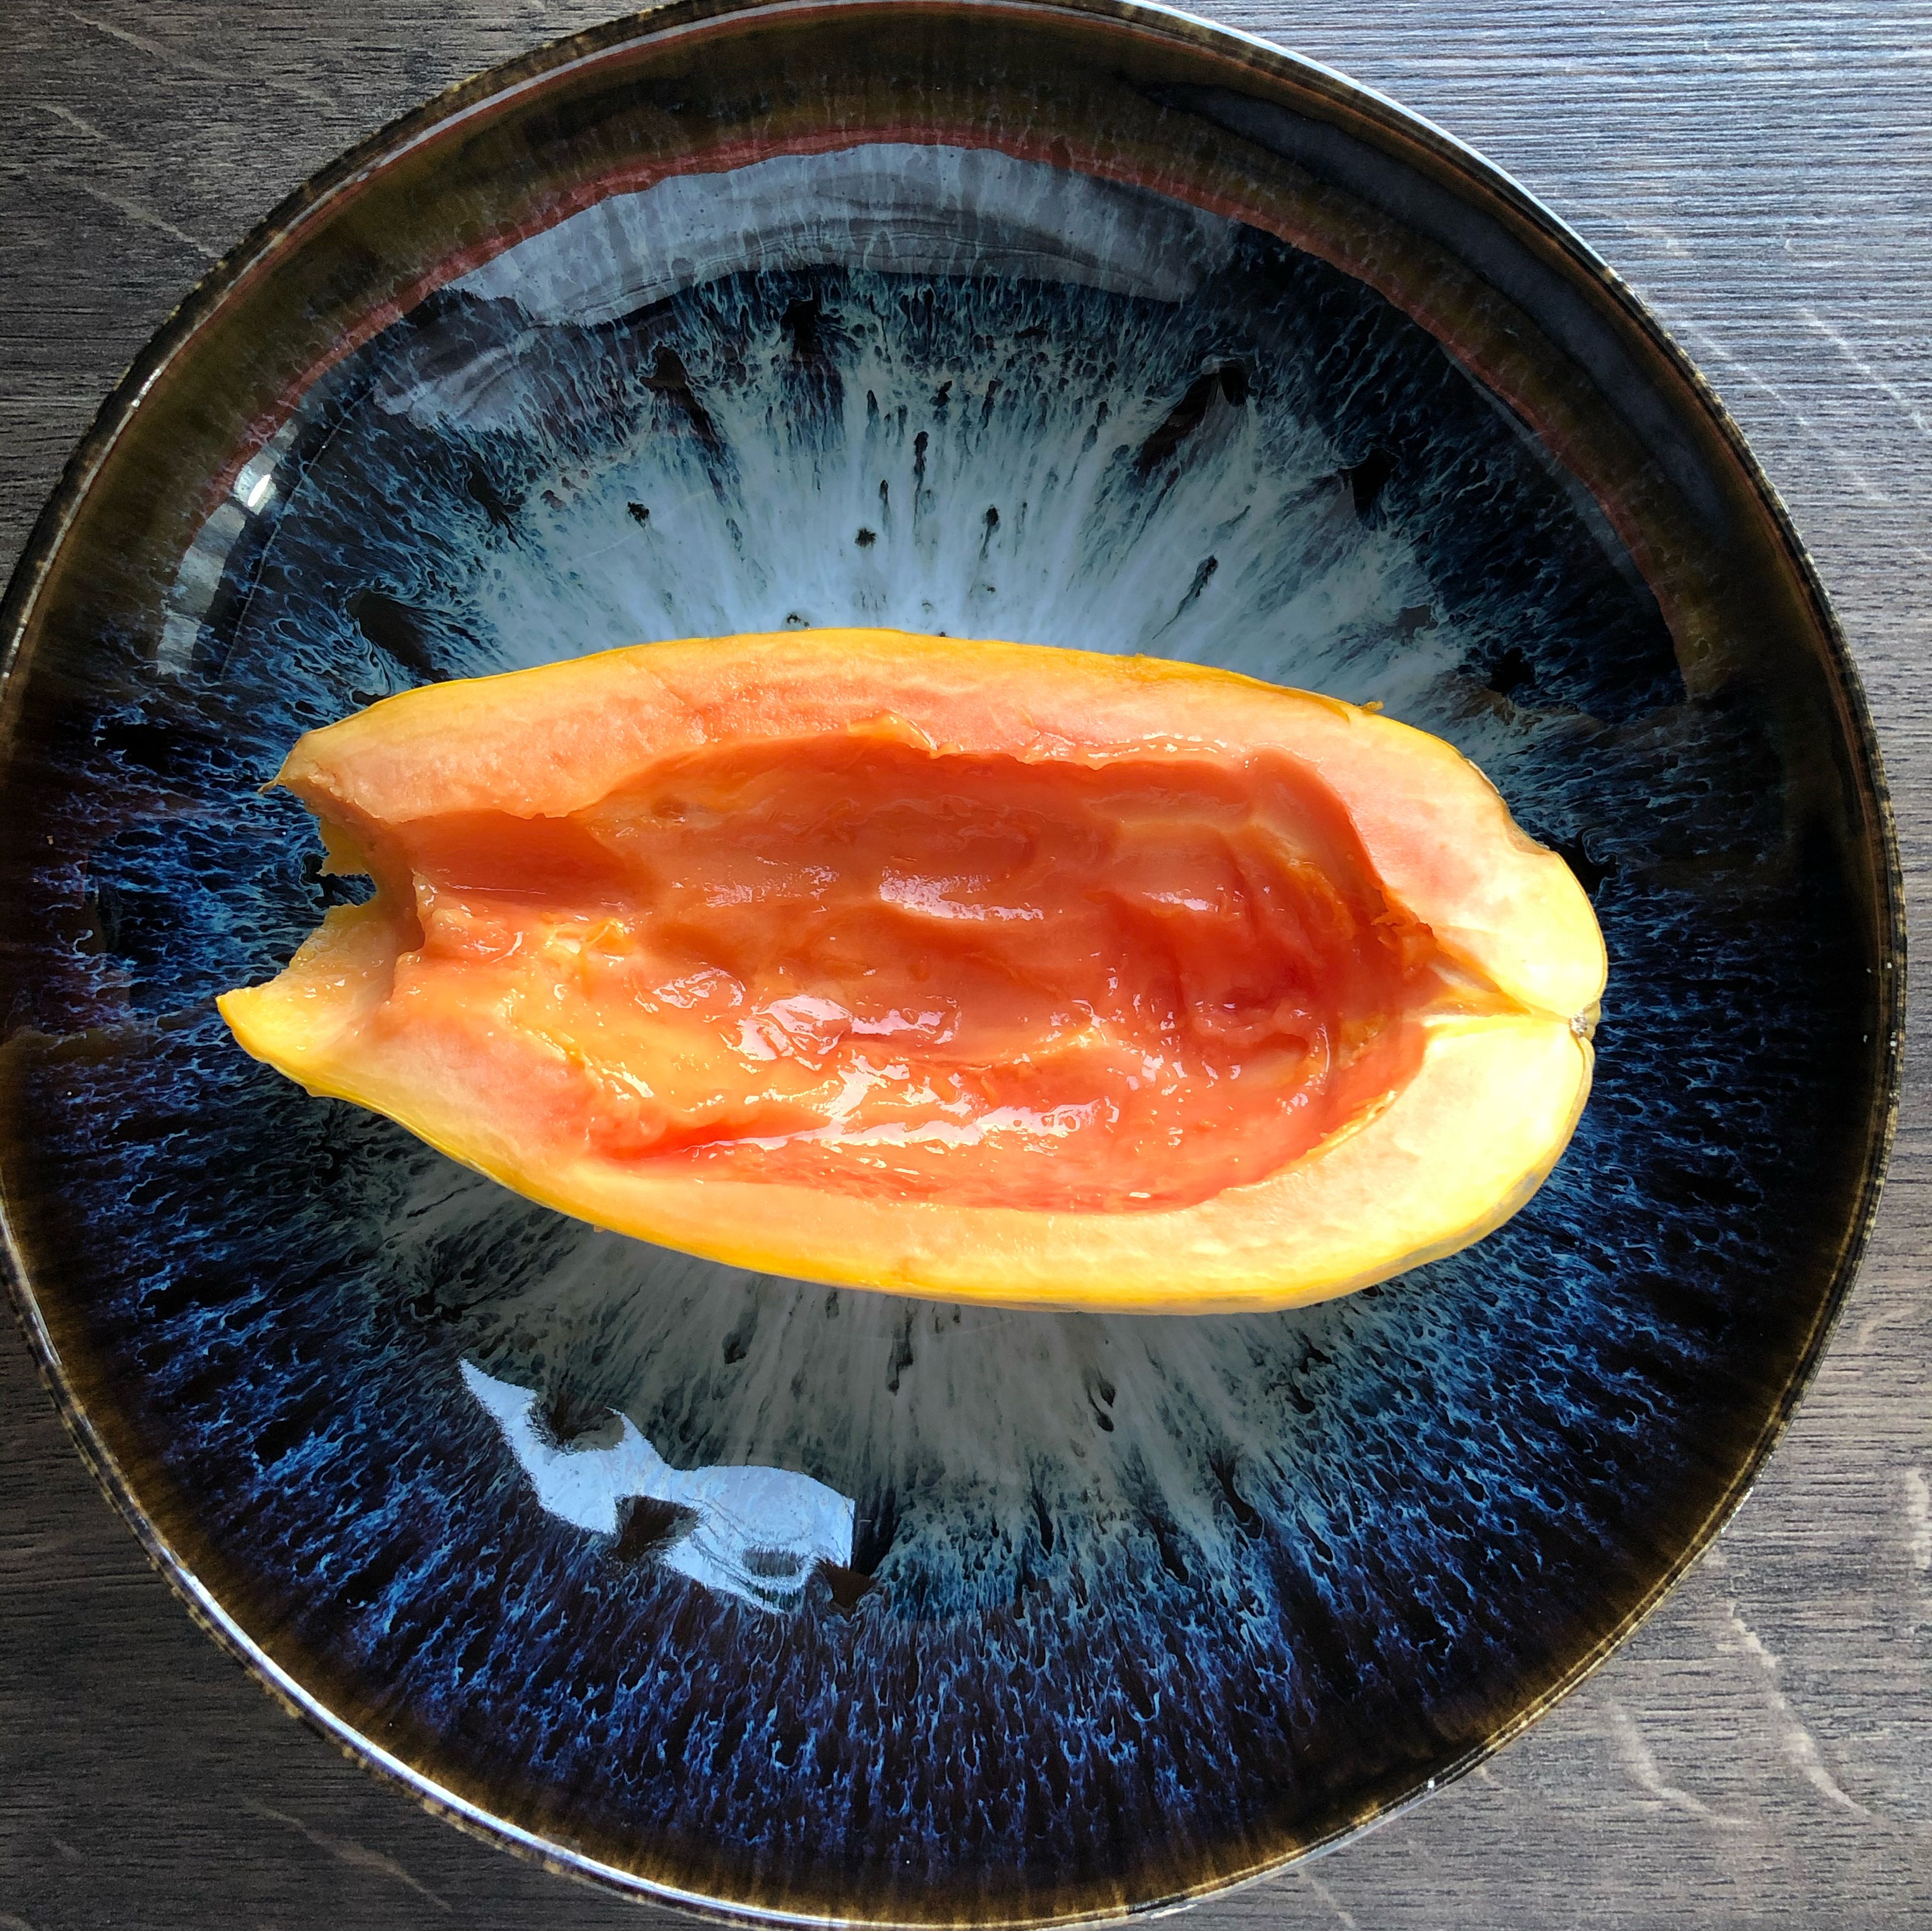 Die Papaya halbieren und entkernen, anschließend jede Hälfte auf einen Teller legen.